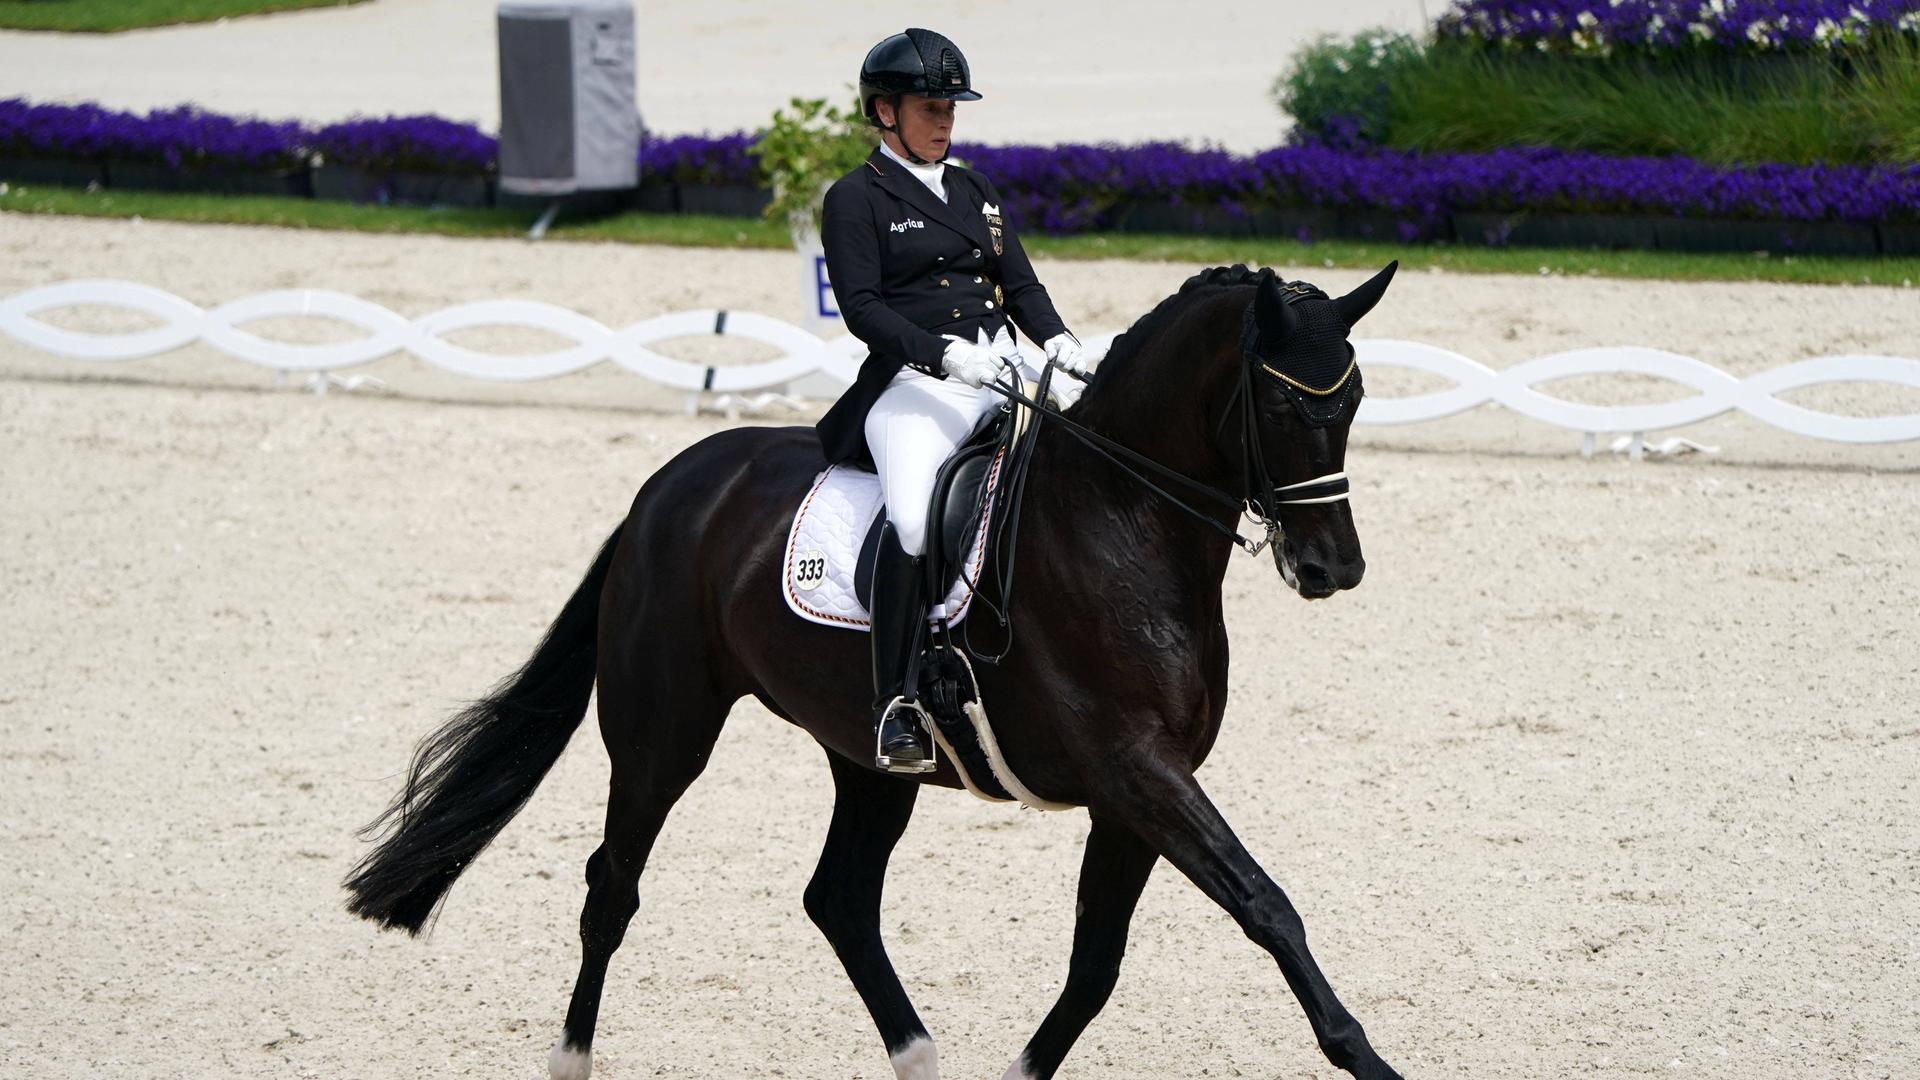 Isabell Werth auf ihrem schwarzen Pferd. Sie trägt eine weisse Hose und eine schwarze Jacke.